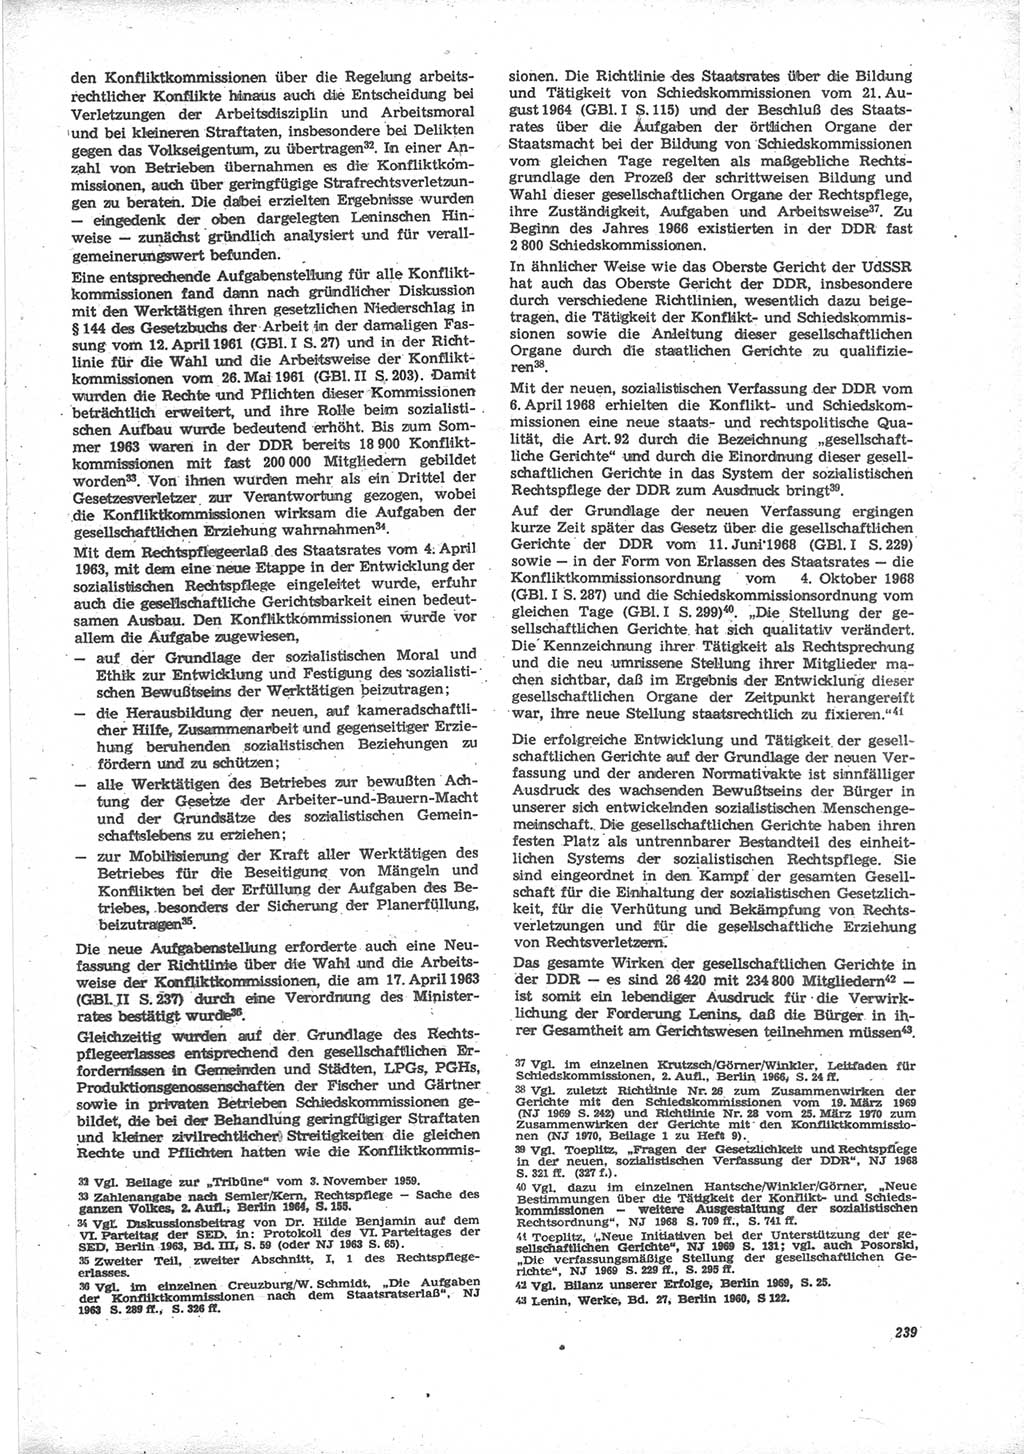 Neue Justiz (NJ), Zeitschrift für Recht und Rechtswissenschaft [Deutsche Demokratische Republik (DDR)], 24. Jahrgang 1970, Seite 239 (NJ DDR 1970, S. 239)